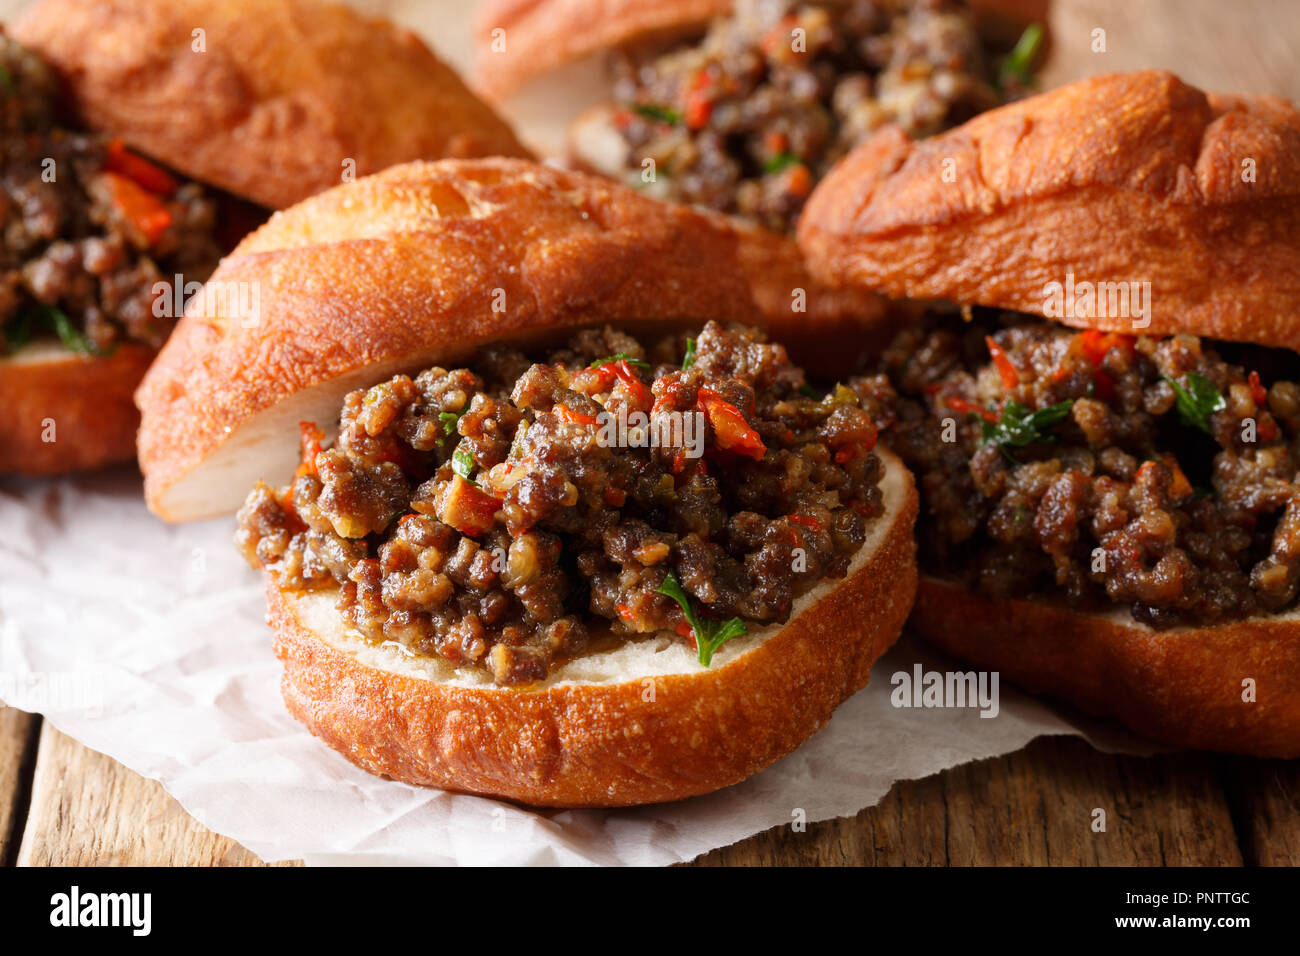 Südafrikanisches Essen: Frittierte vetkoek Sandwich mit Fleisch in der Nähe Curry - auf den Tisch. Horizontale Stockfoto